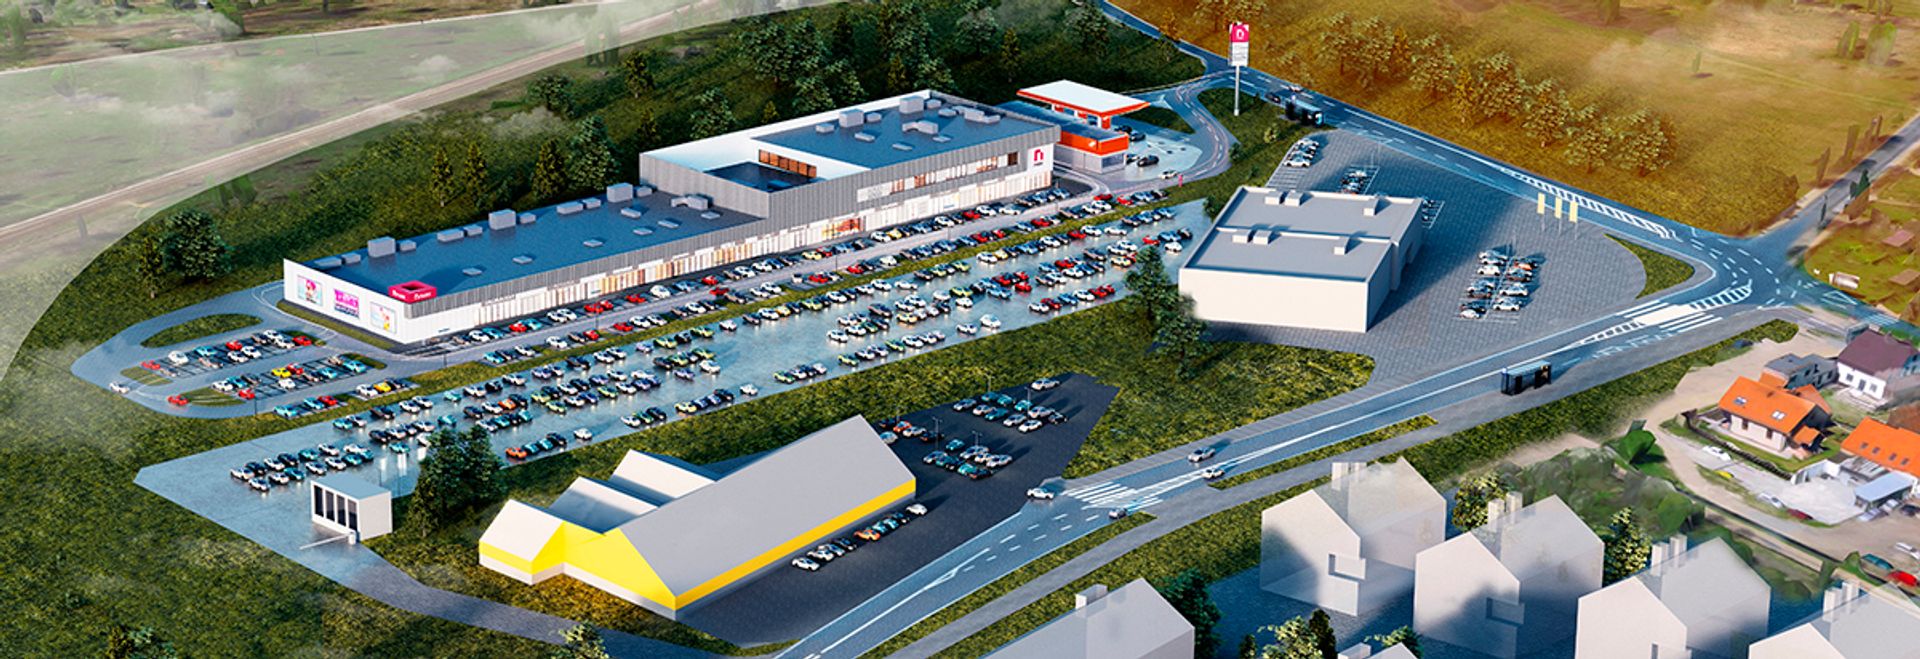 Ponownie rusza proces administracyjny budowy parku handlowego na Maślicach